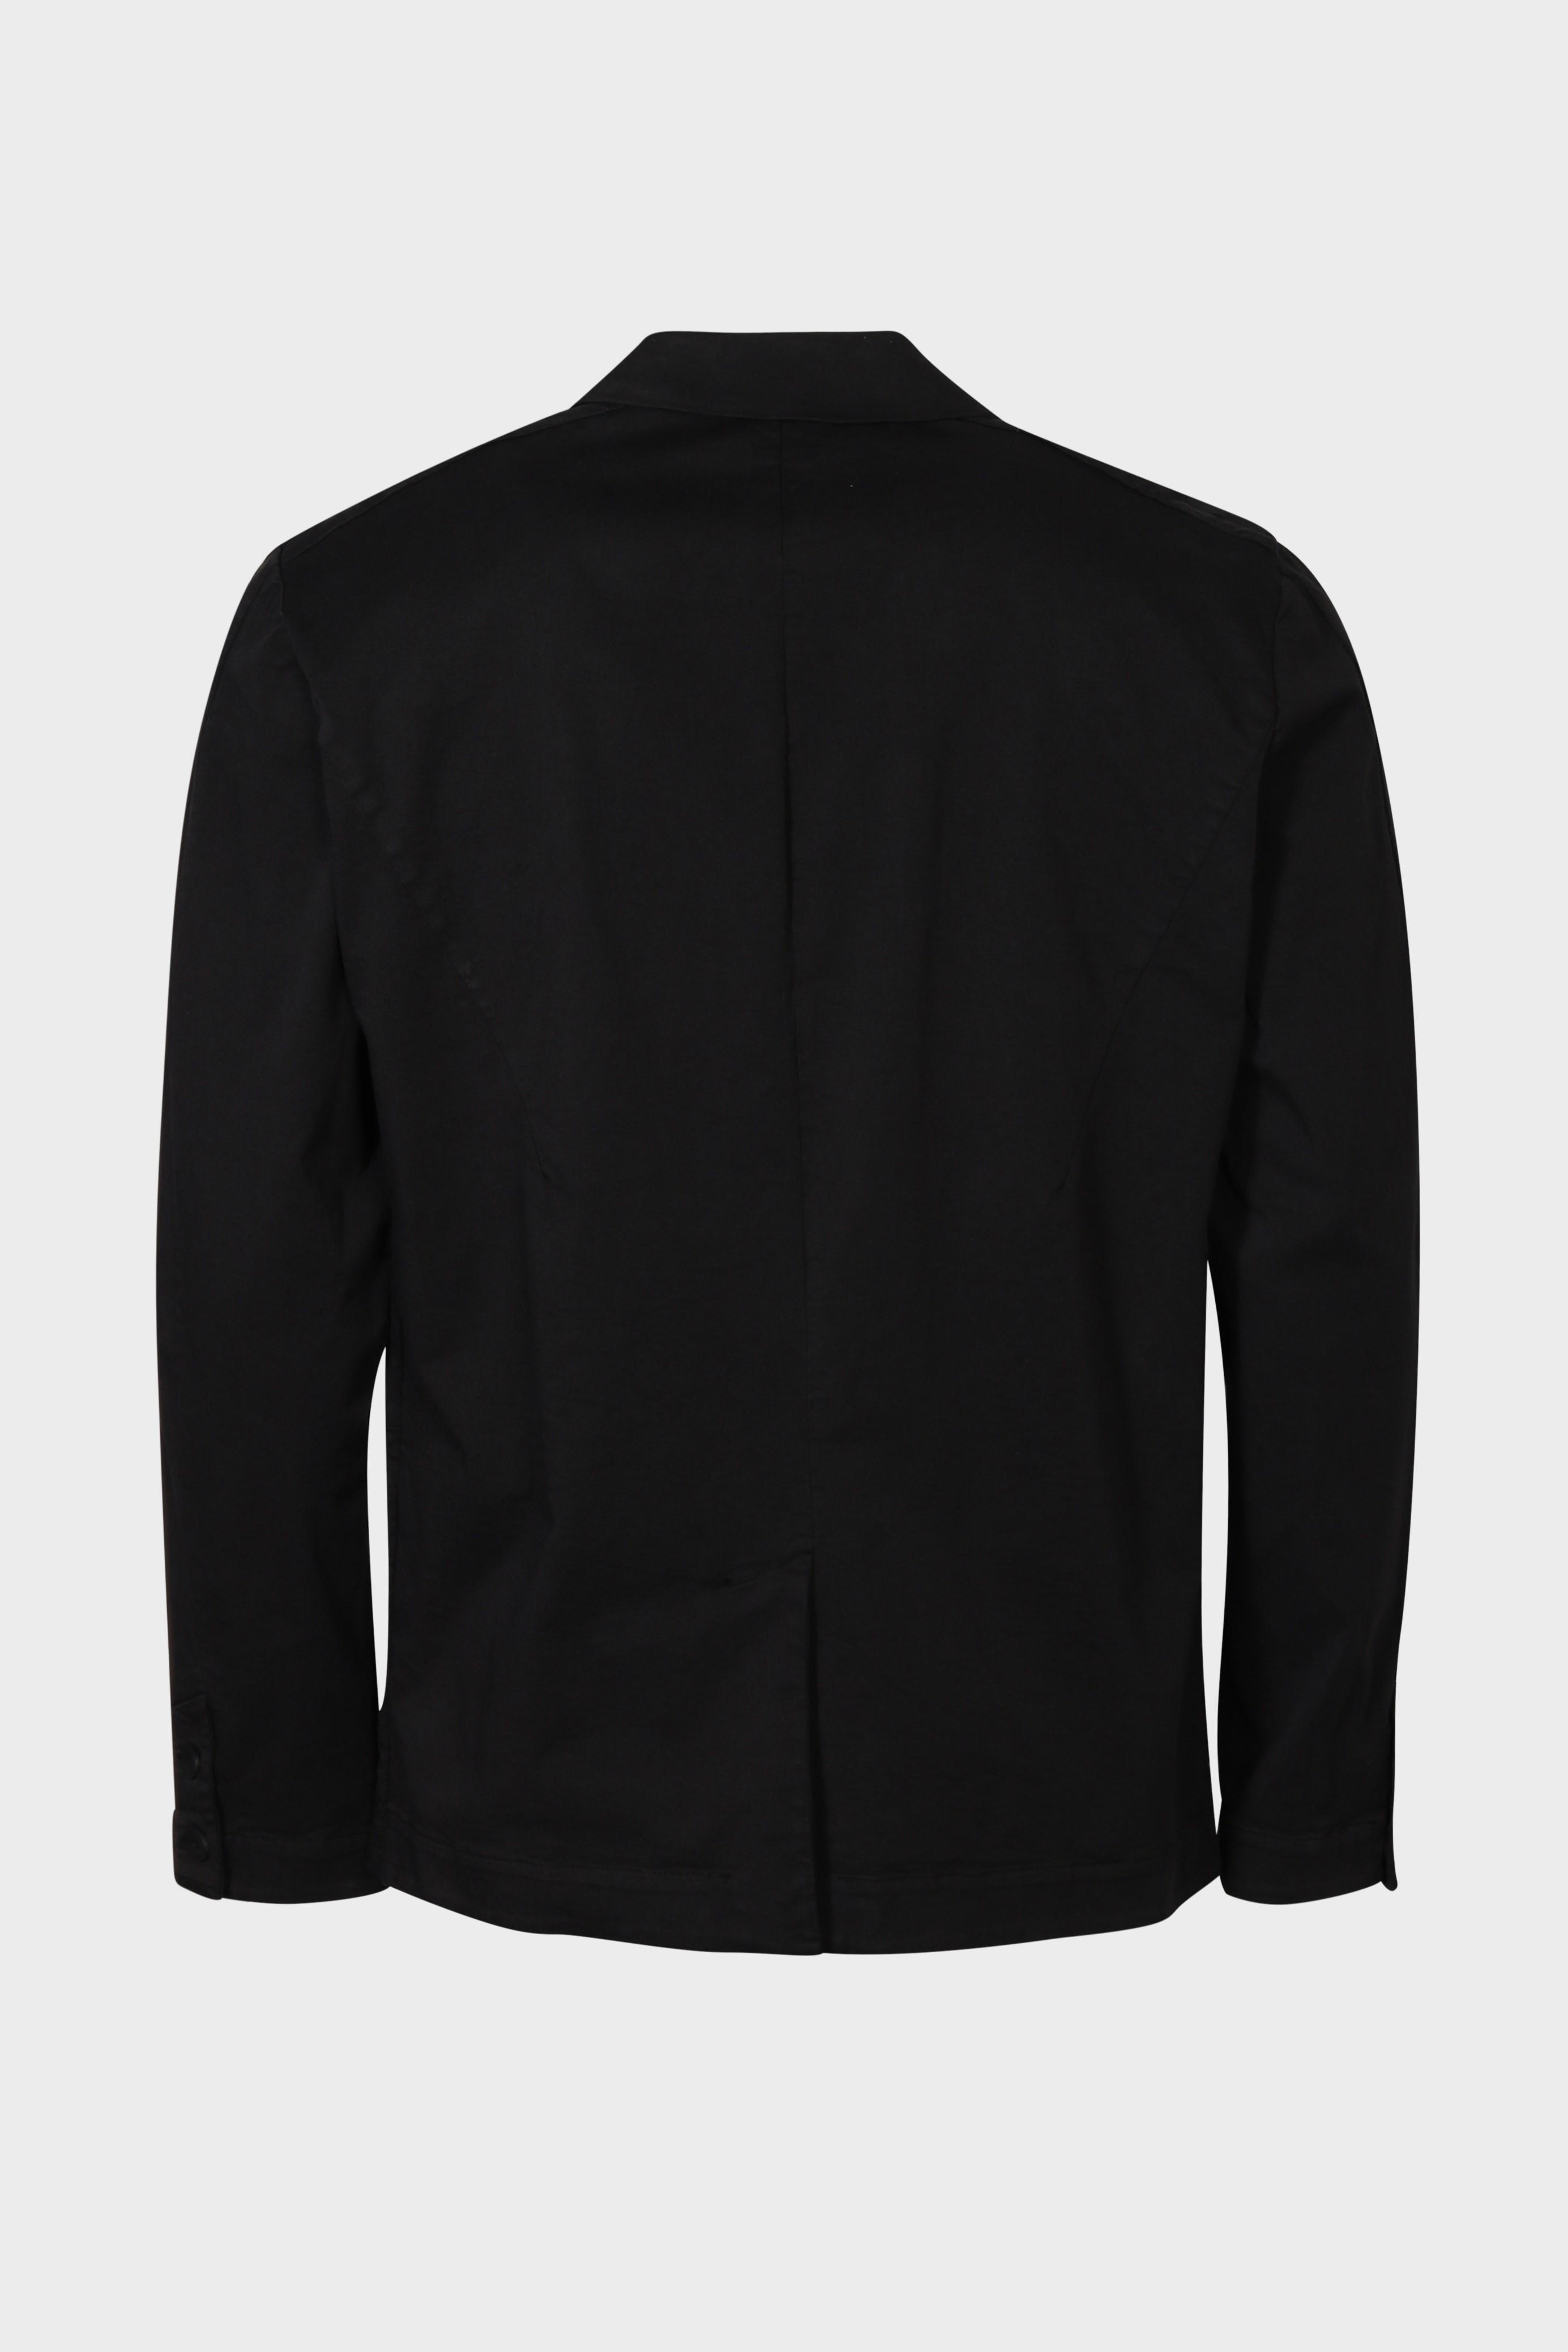 TRANSIT UOMO Cotton/Linen Jacket in Black M